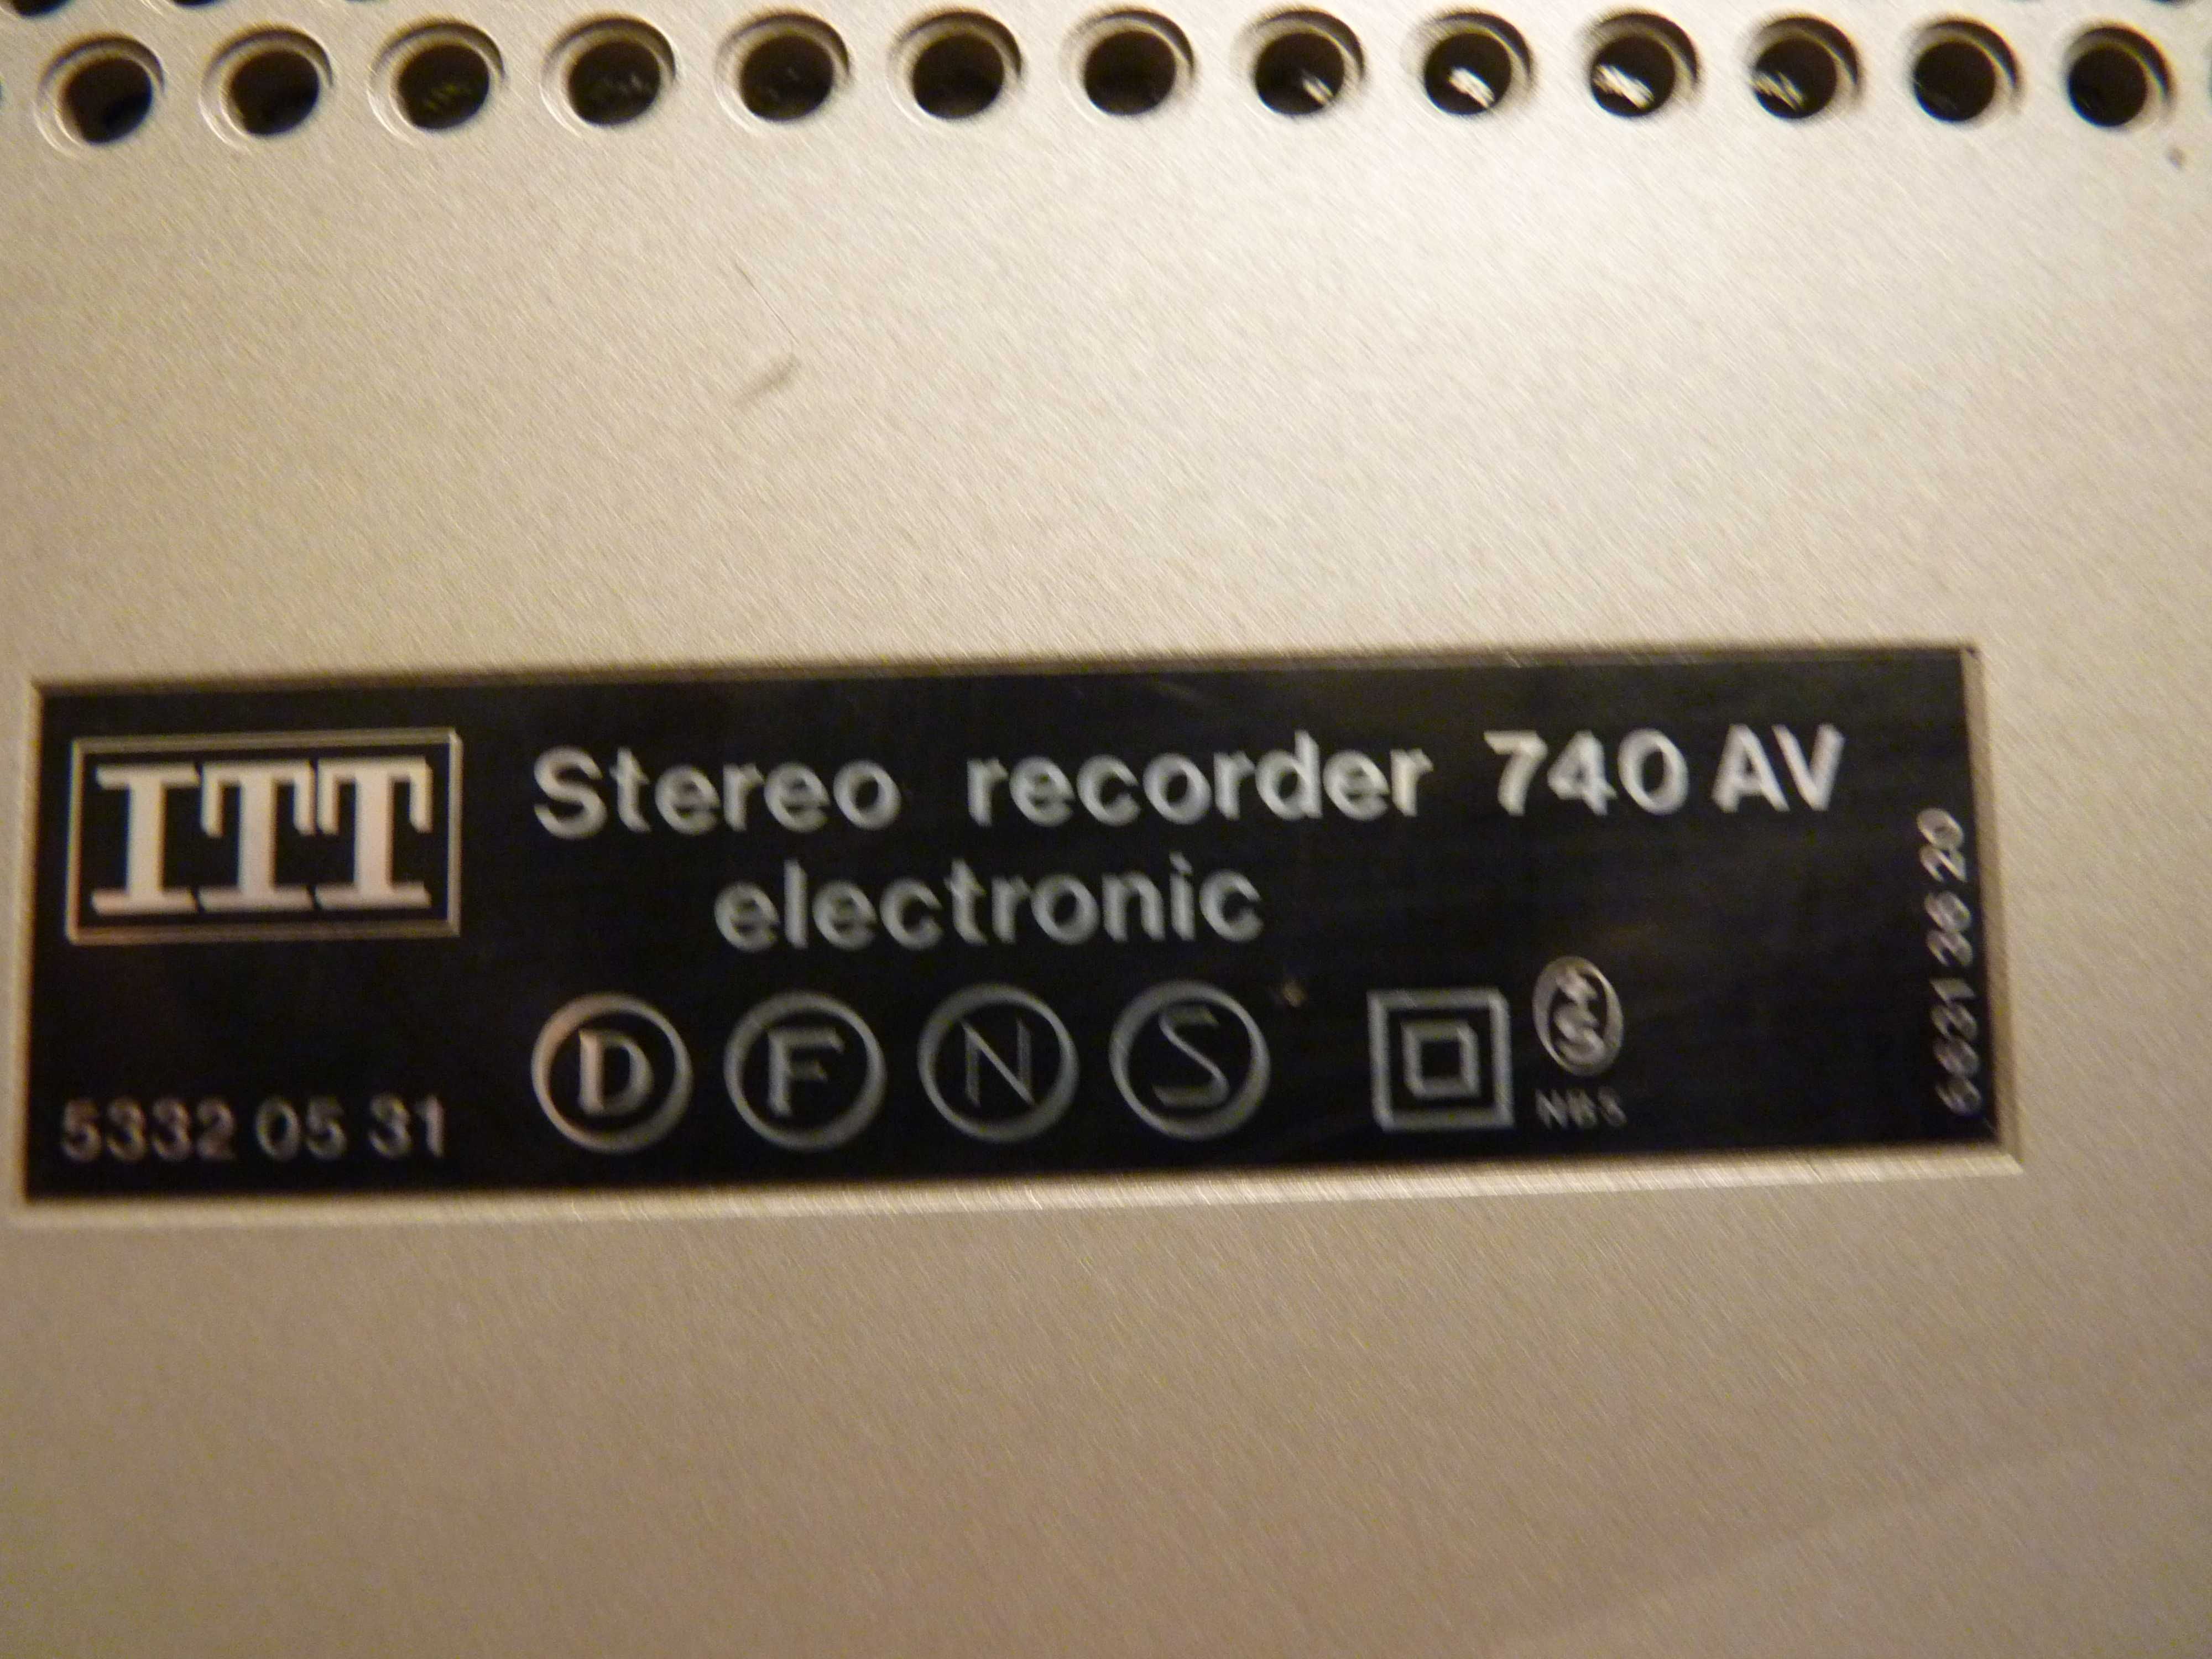 Unikatowy magnetofon reporterski ITT 740AV,sprawny,ładny stan.